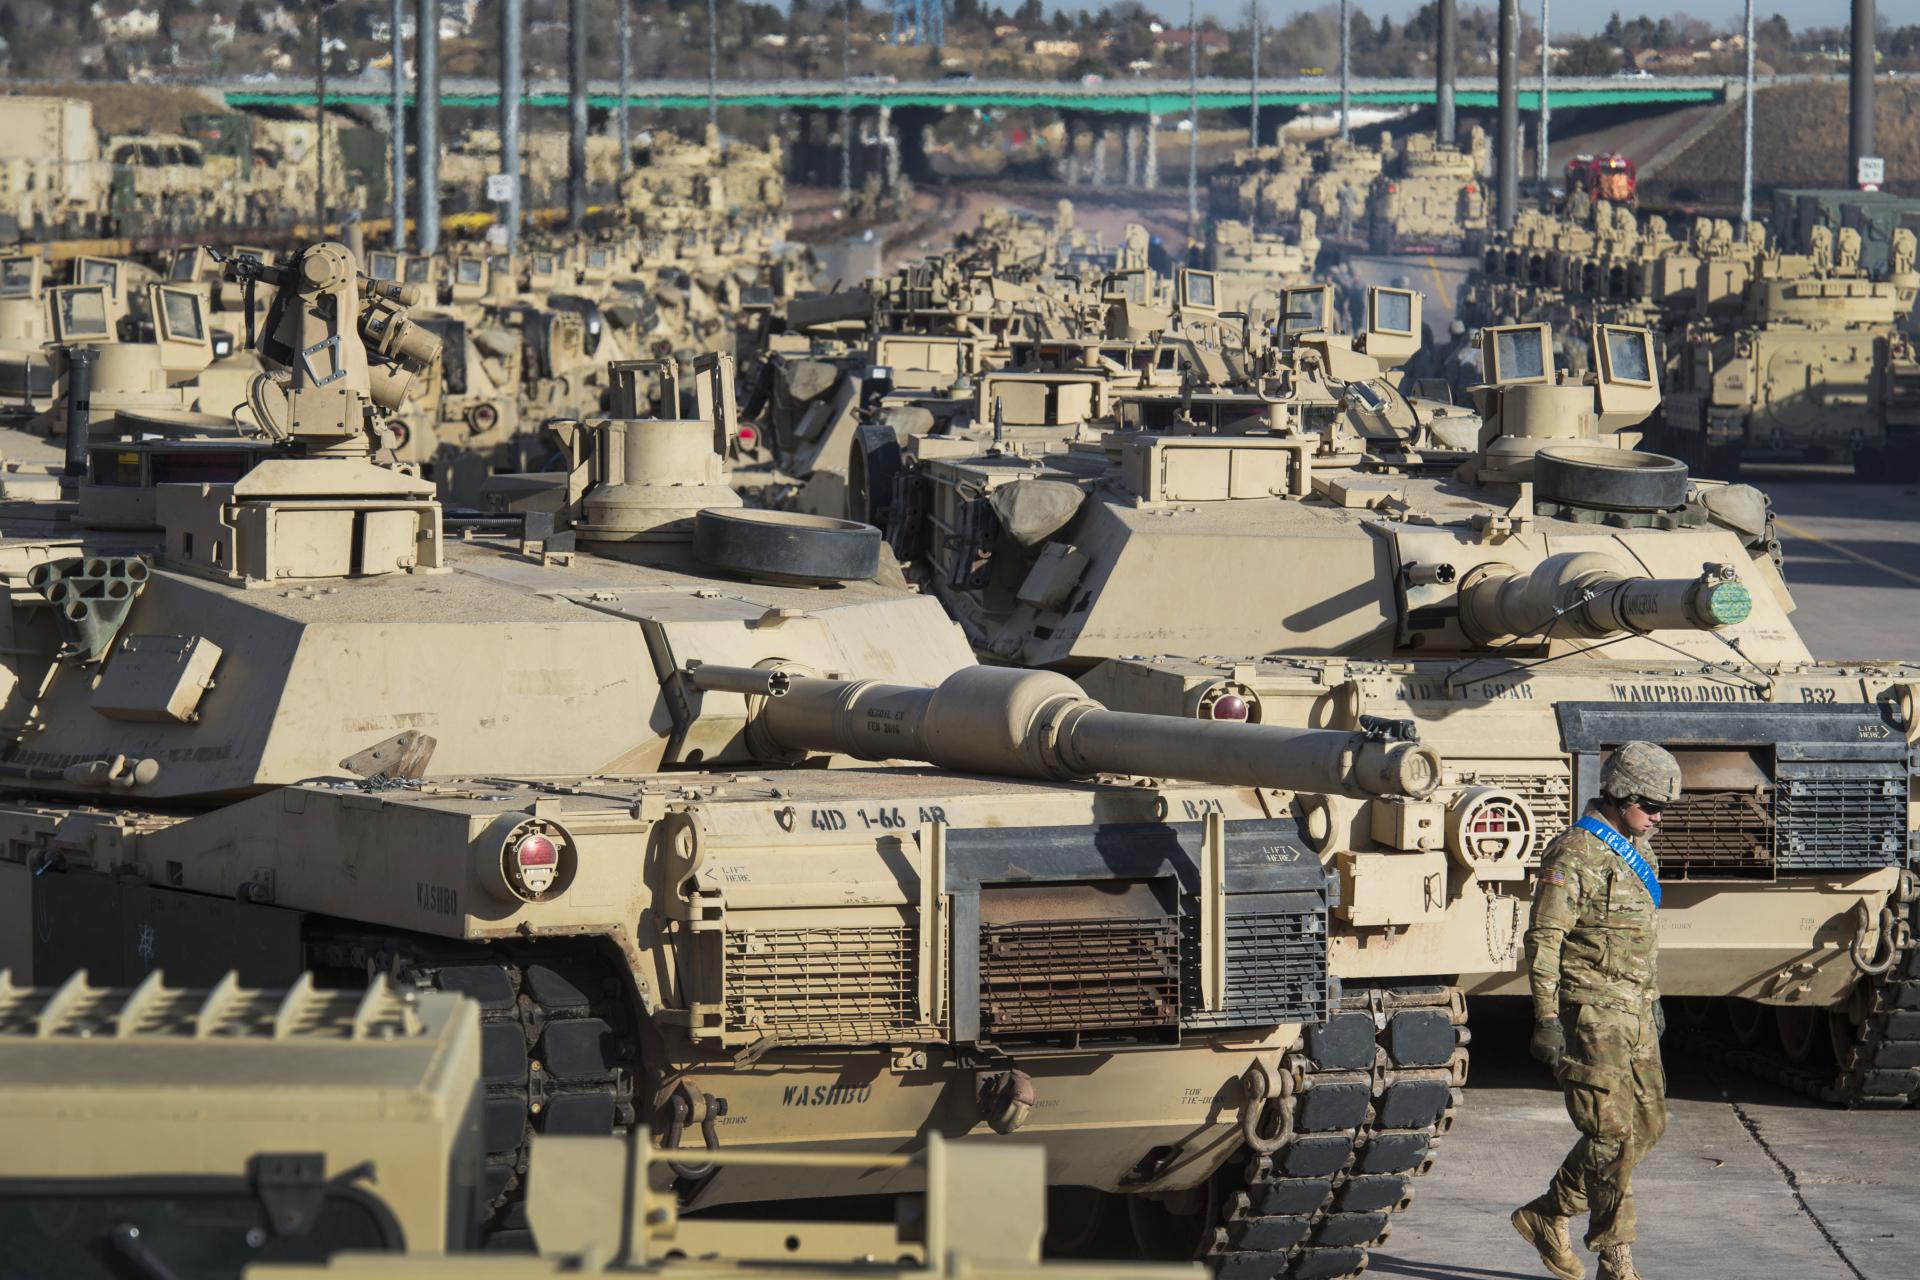 Ukrajine sľúbili spolu 321 tankov, oznámil veľvyslanec vo Francúzsku. Kyjev potrebuje pomoc 